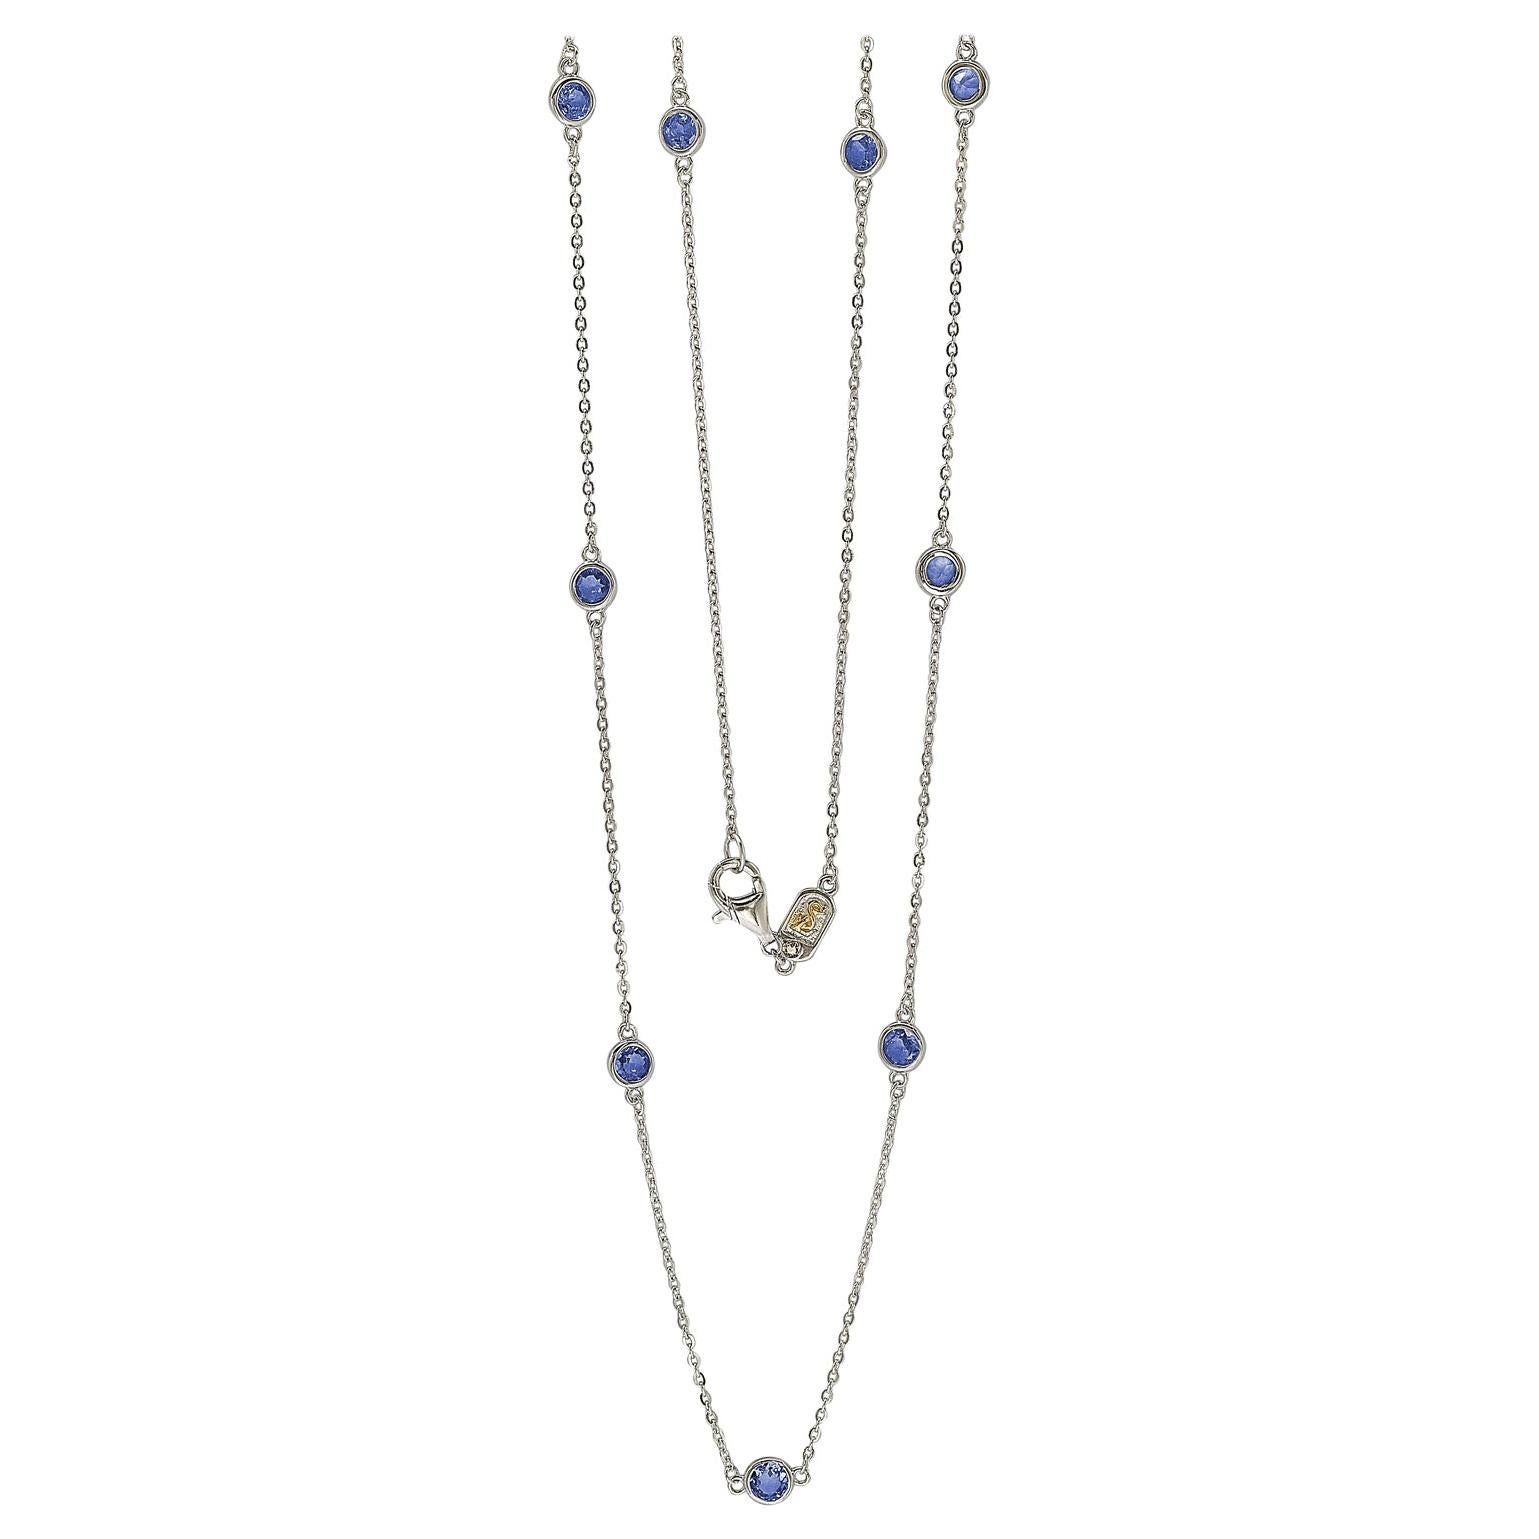 Halskette von Suzy Levian aus Sterlingsilber mit Saphir-Lünette